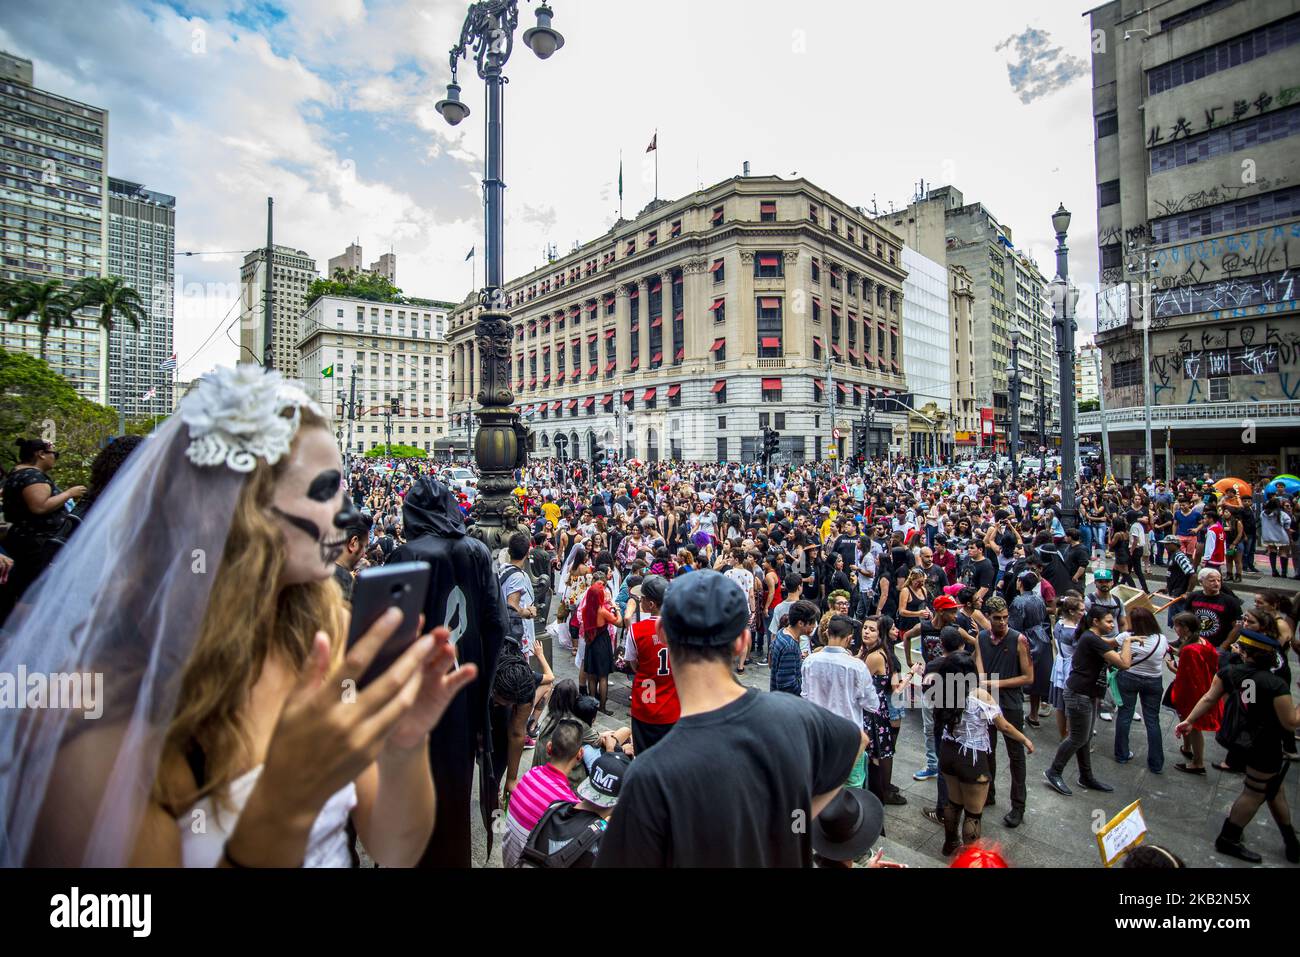 Die Menschen nehmen am jährlichen Zombie Walk am 2. November 2018 in São Paulo Teil. Die Leute kleiden sich und verwenden Make-up, um sich selbst aussehen zu lassen wie Zombies und andere Charaktere aus Horrorfilmen. (Foto von Cris FAGA/NurPhoto) Stockfoto